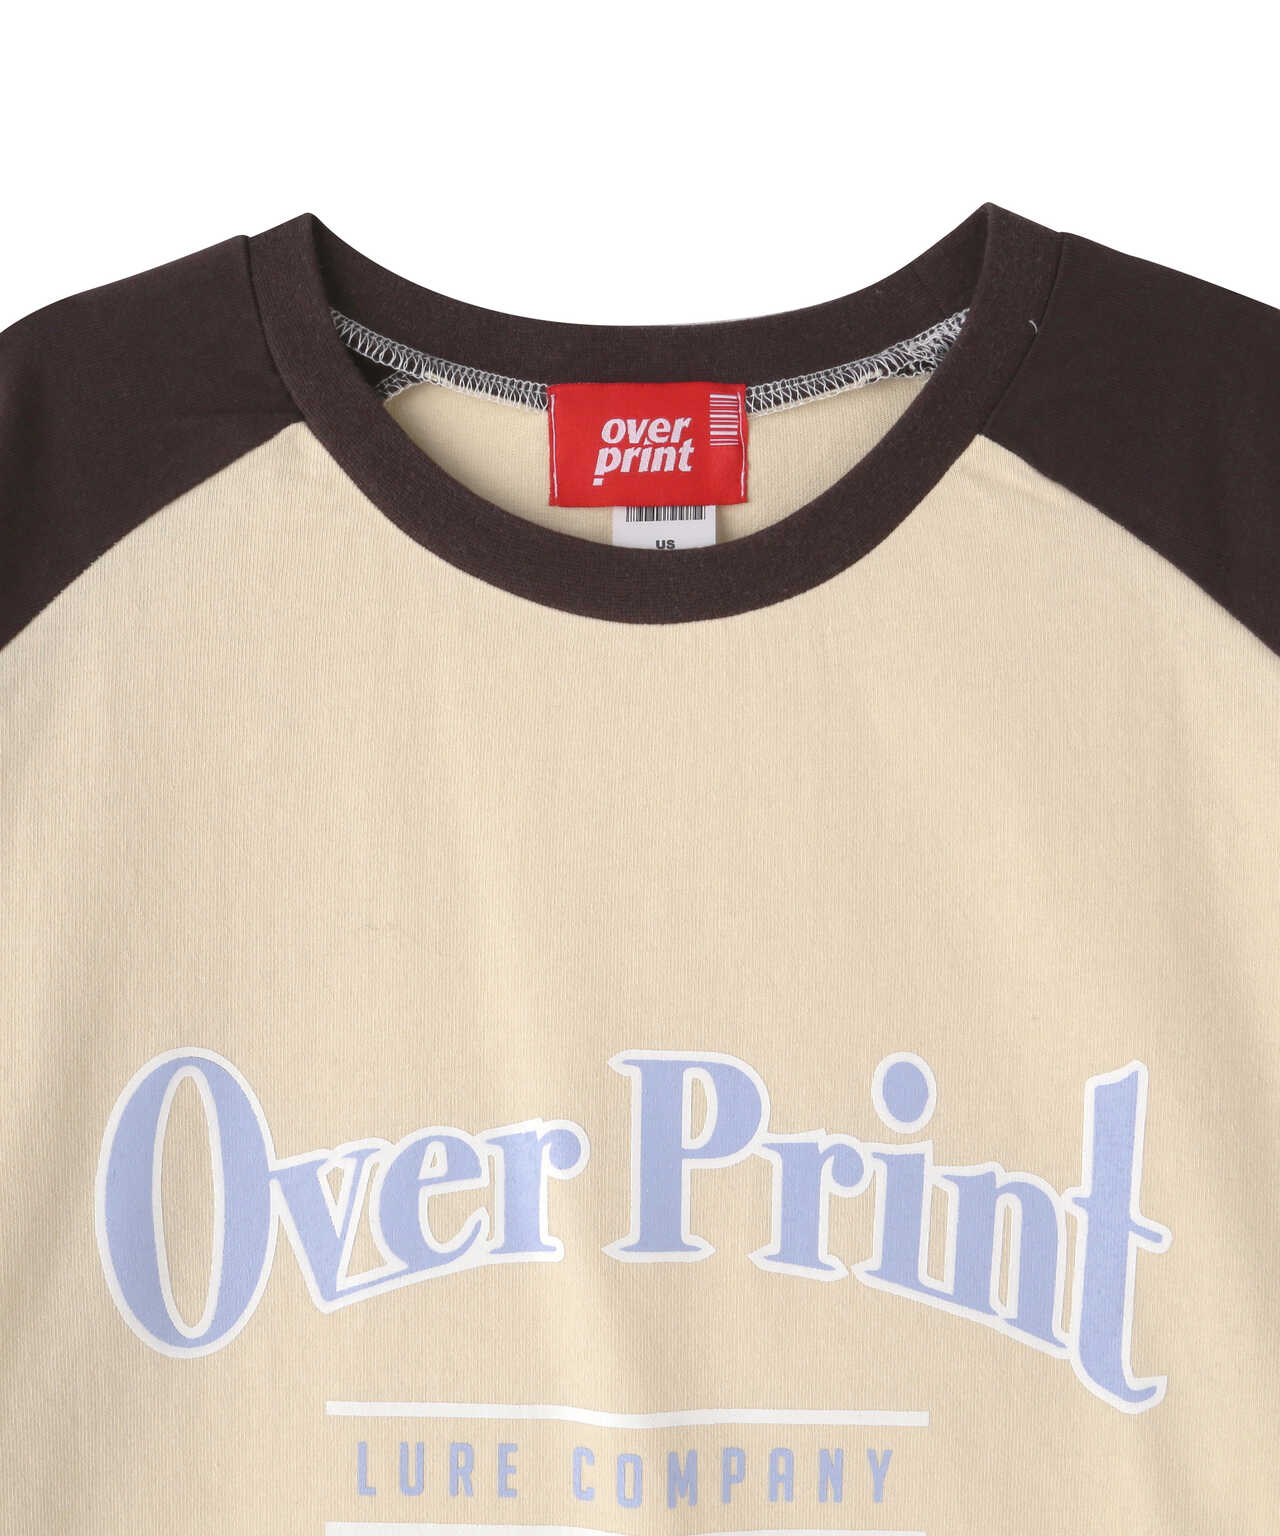 overprint/Tシャツ